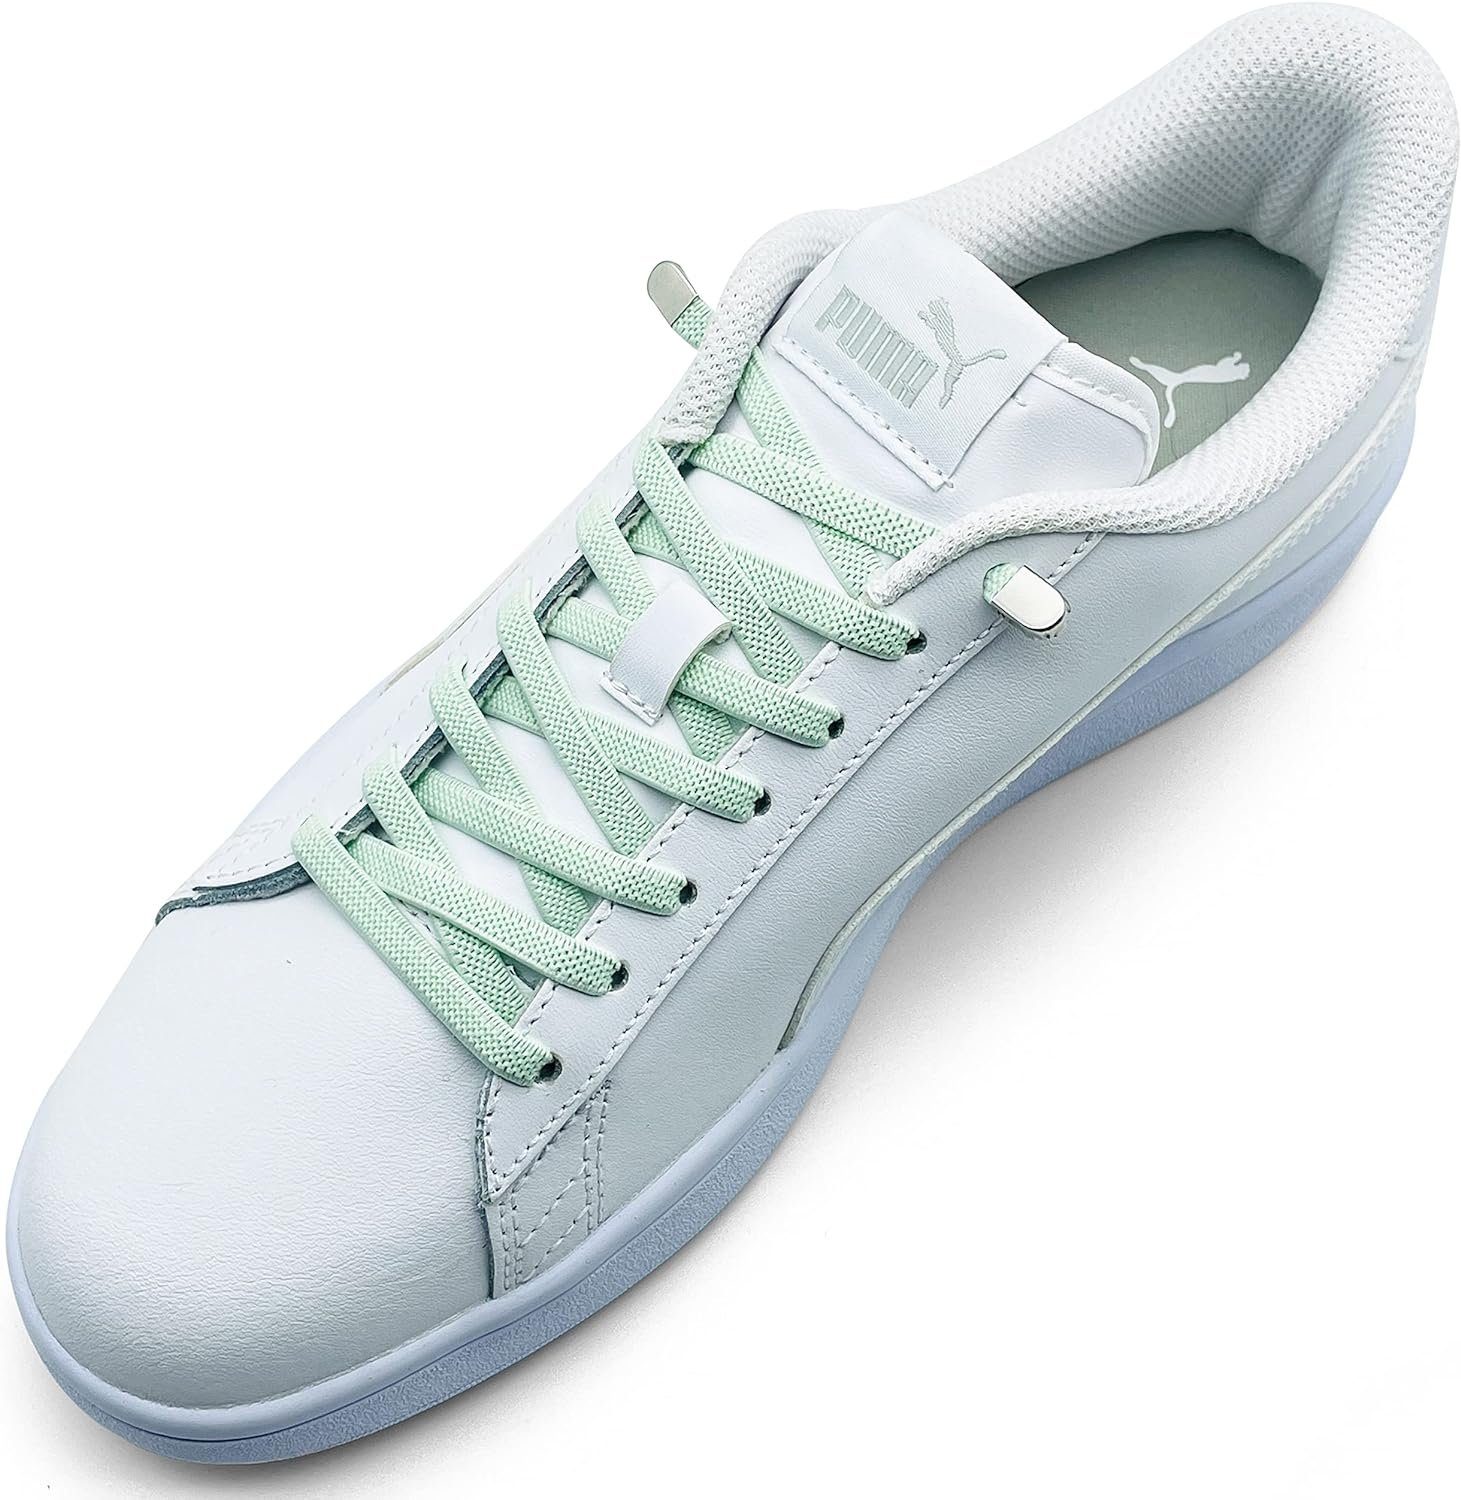 ELANOX Schnürsenkel 4 Stück für 2 Paar Schuhe elastische Schnürsenkel mit Clips, inkl. Enden (Clips) - 8 St. in silber hellgrün